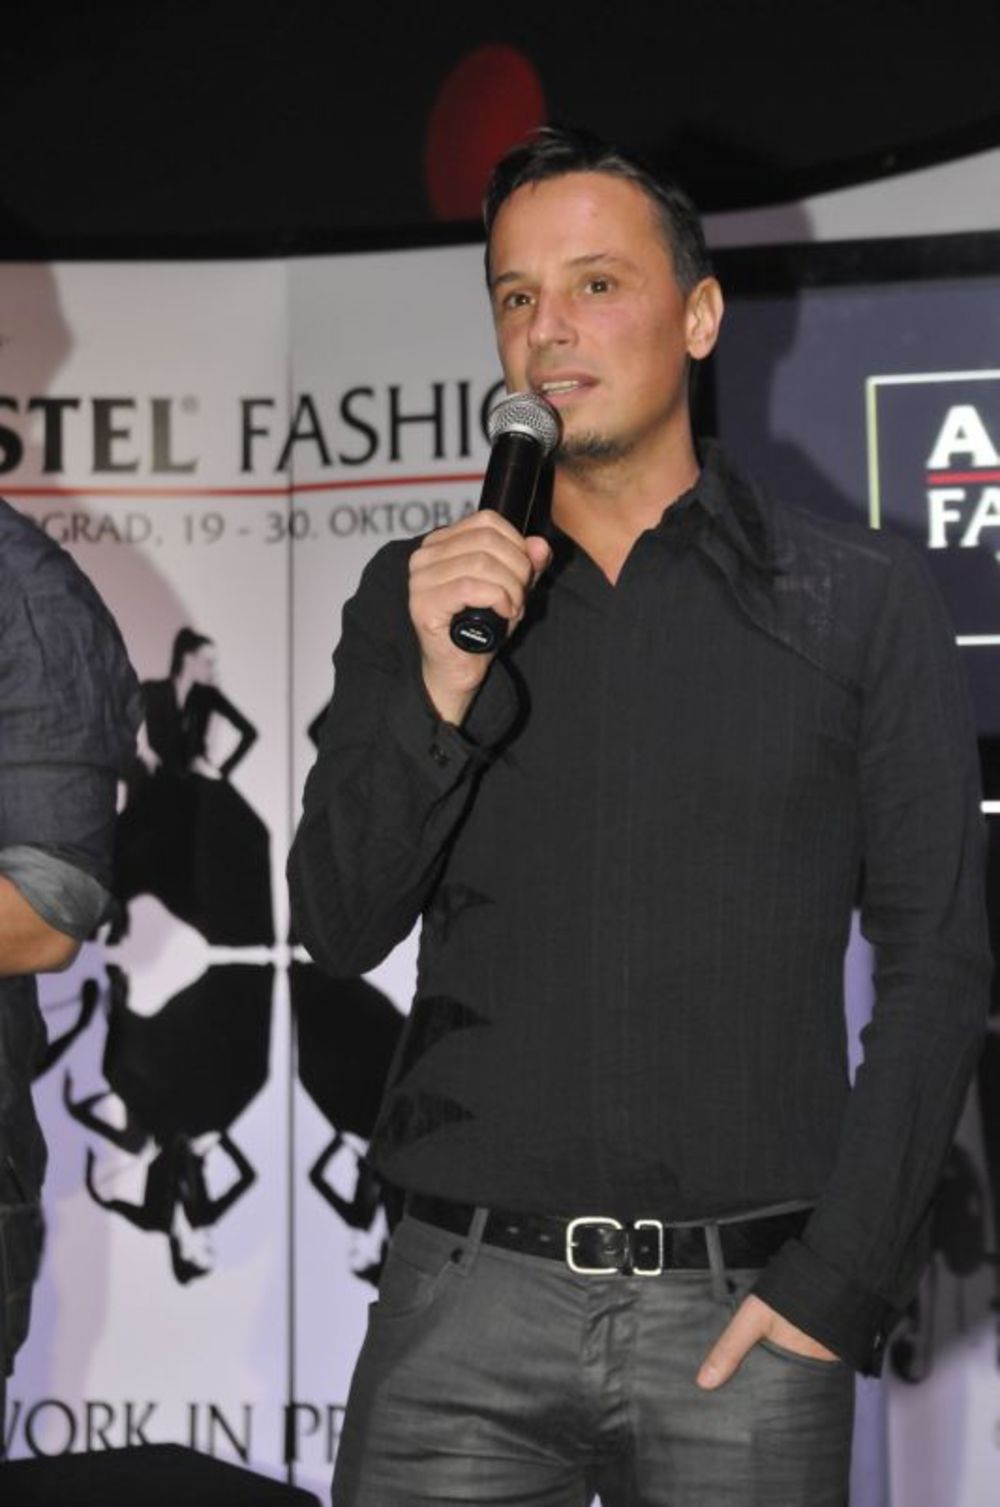 Tradicionalne nagrade za najbolje učesnike 30. Amstel Fashion Week-a svečano su uručene u utorak 8. novembra u novootvorenom klubu Opposite. Tokom dodele nagrada ekskluzivno je bio izložen model Nataše Šarić, koja će Srbiju predstavljati na prvom World Fashion